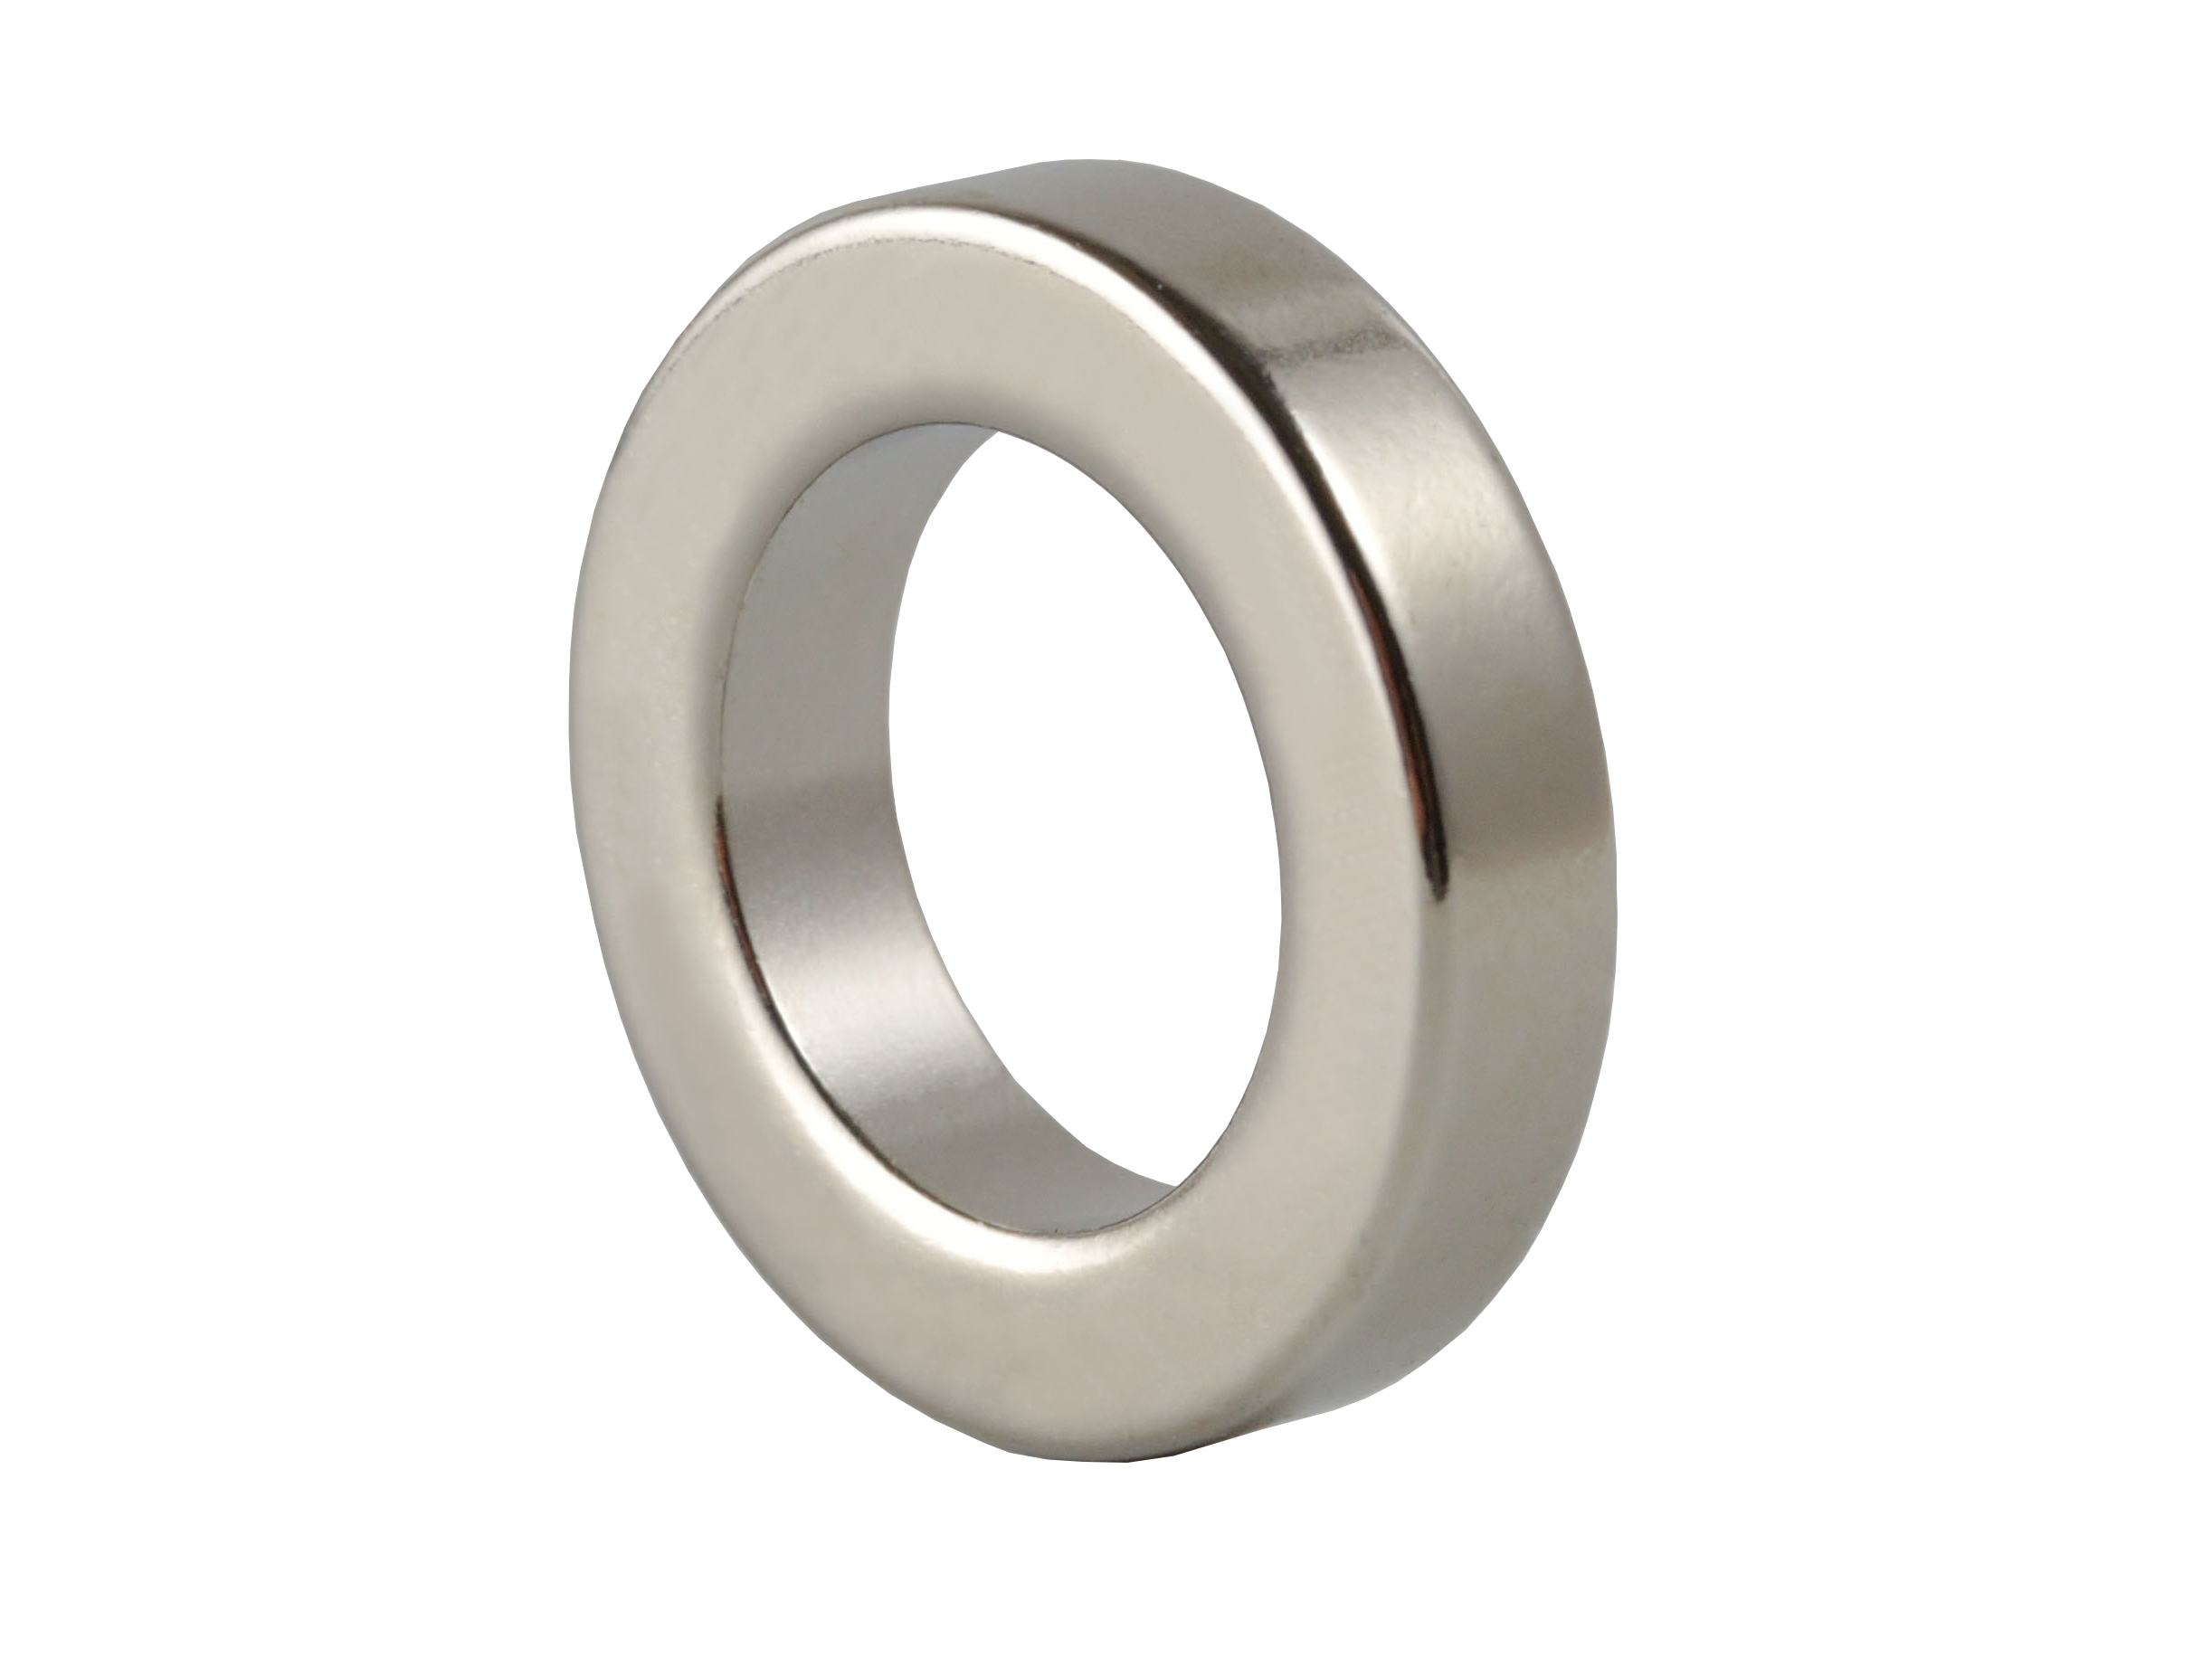 Ring‑Shaped Neodymium Magnet (NOR011) 